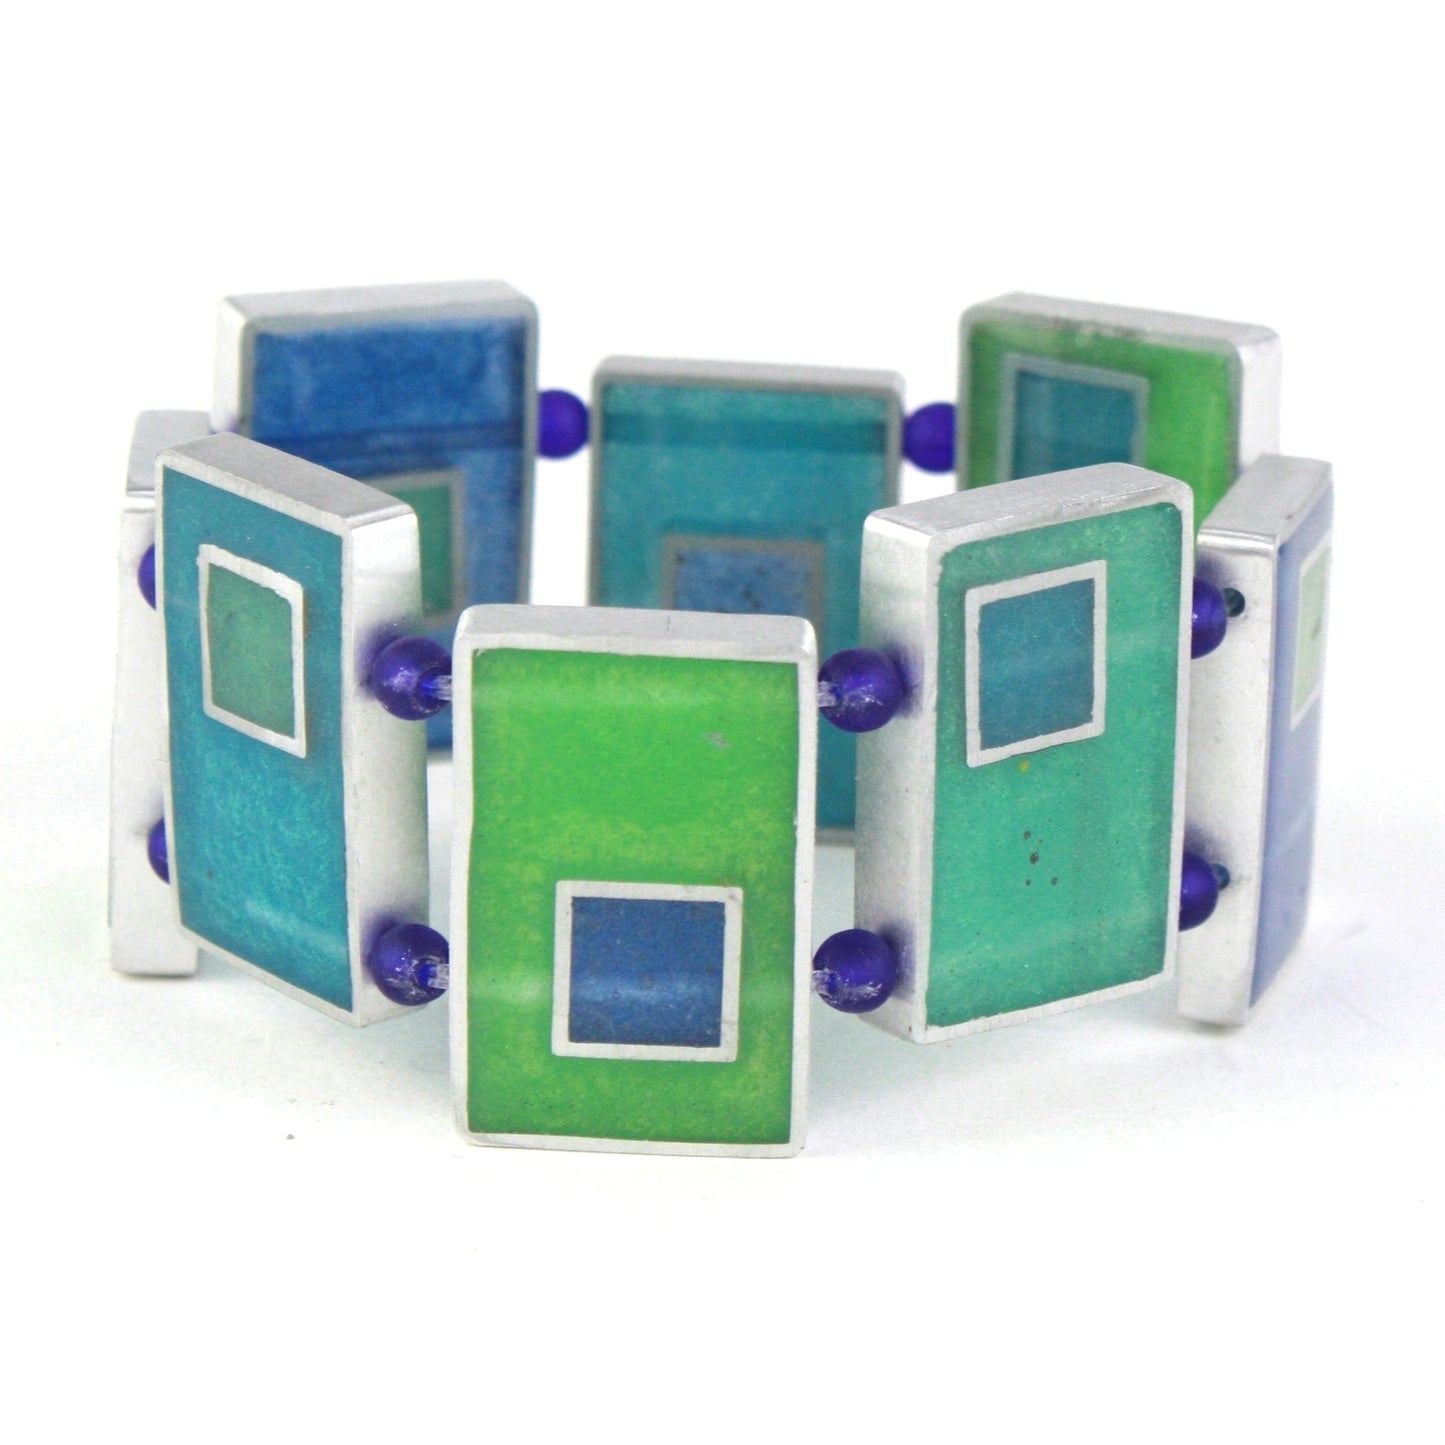 Resinique rectangle bracelet - Blues and greens -wholesale